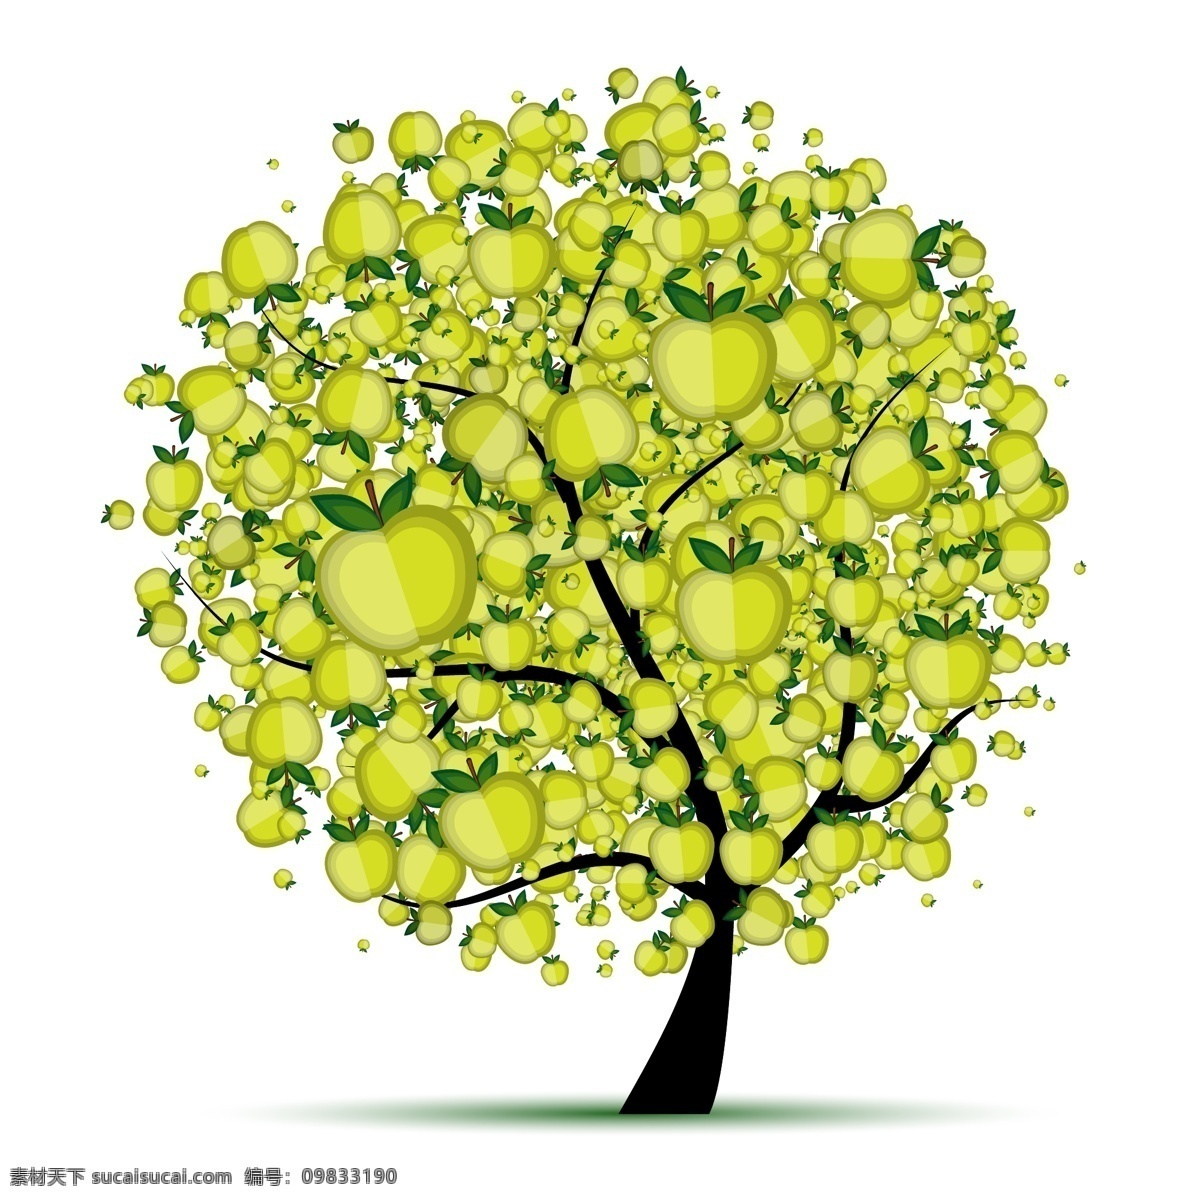 创意 苹果树 果树 绿色 绿叶 苹果 水果 叶子 矢量